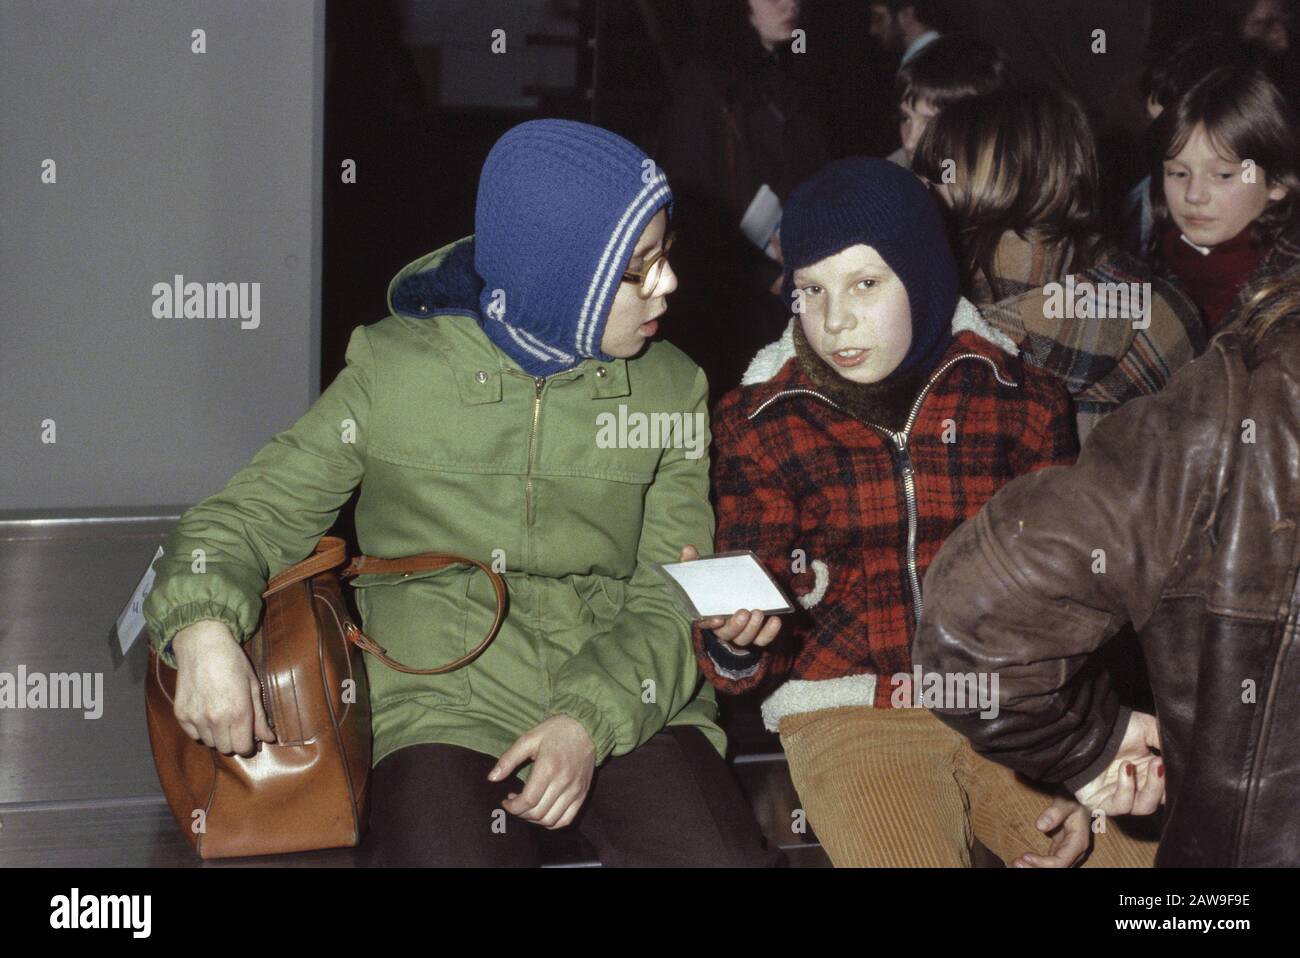 Polnische Kinder in Schiphol hier für einen Monat Urlaub Datum: 8. Februar 1982 Ort: Nordholland, Schiphol Schlüsselwörter: Kinder, Ankunft, Urlaub Stockfoto